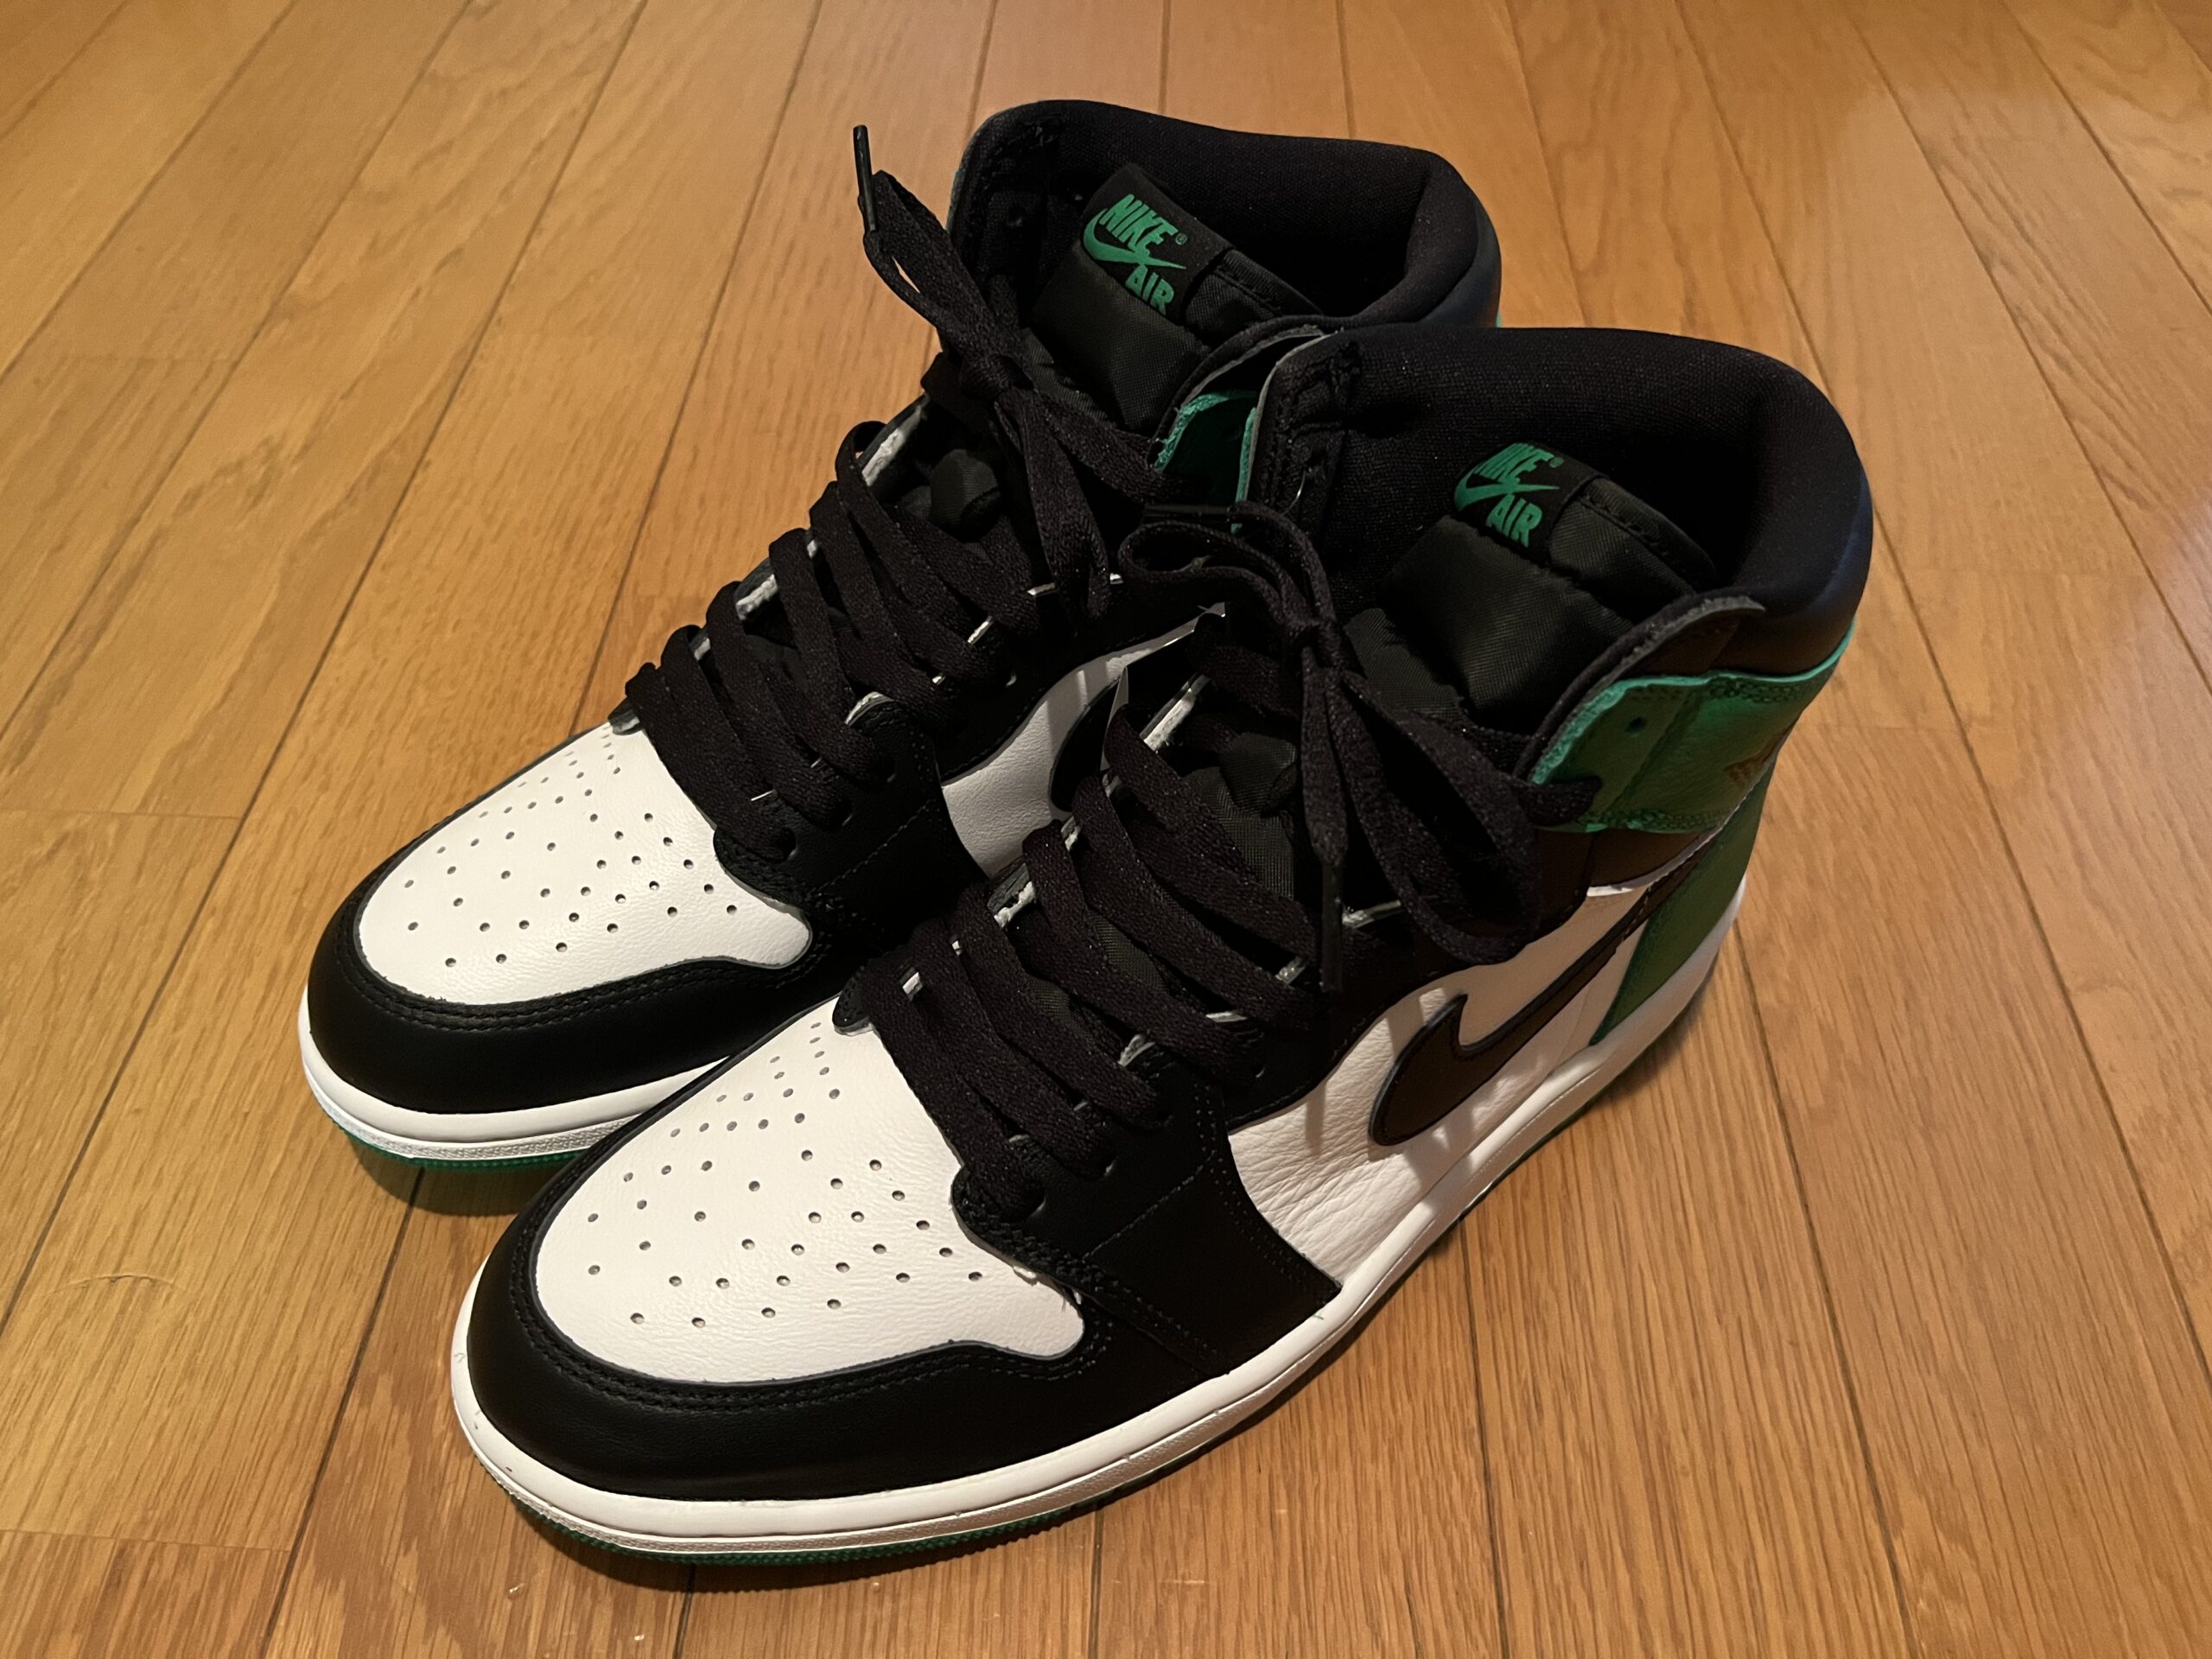 Nike Air Jordan 1 Retro High OG “Celtics/Black and Lucky Green